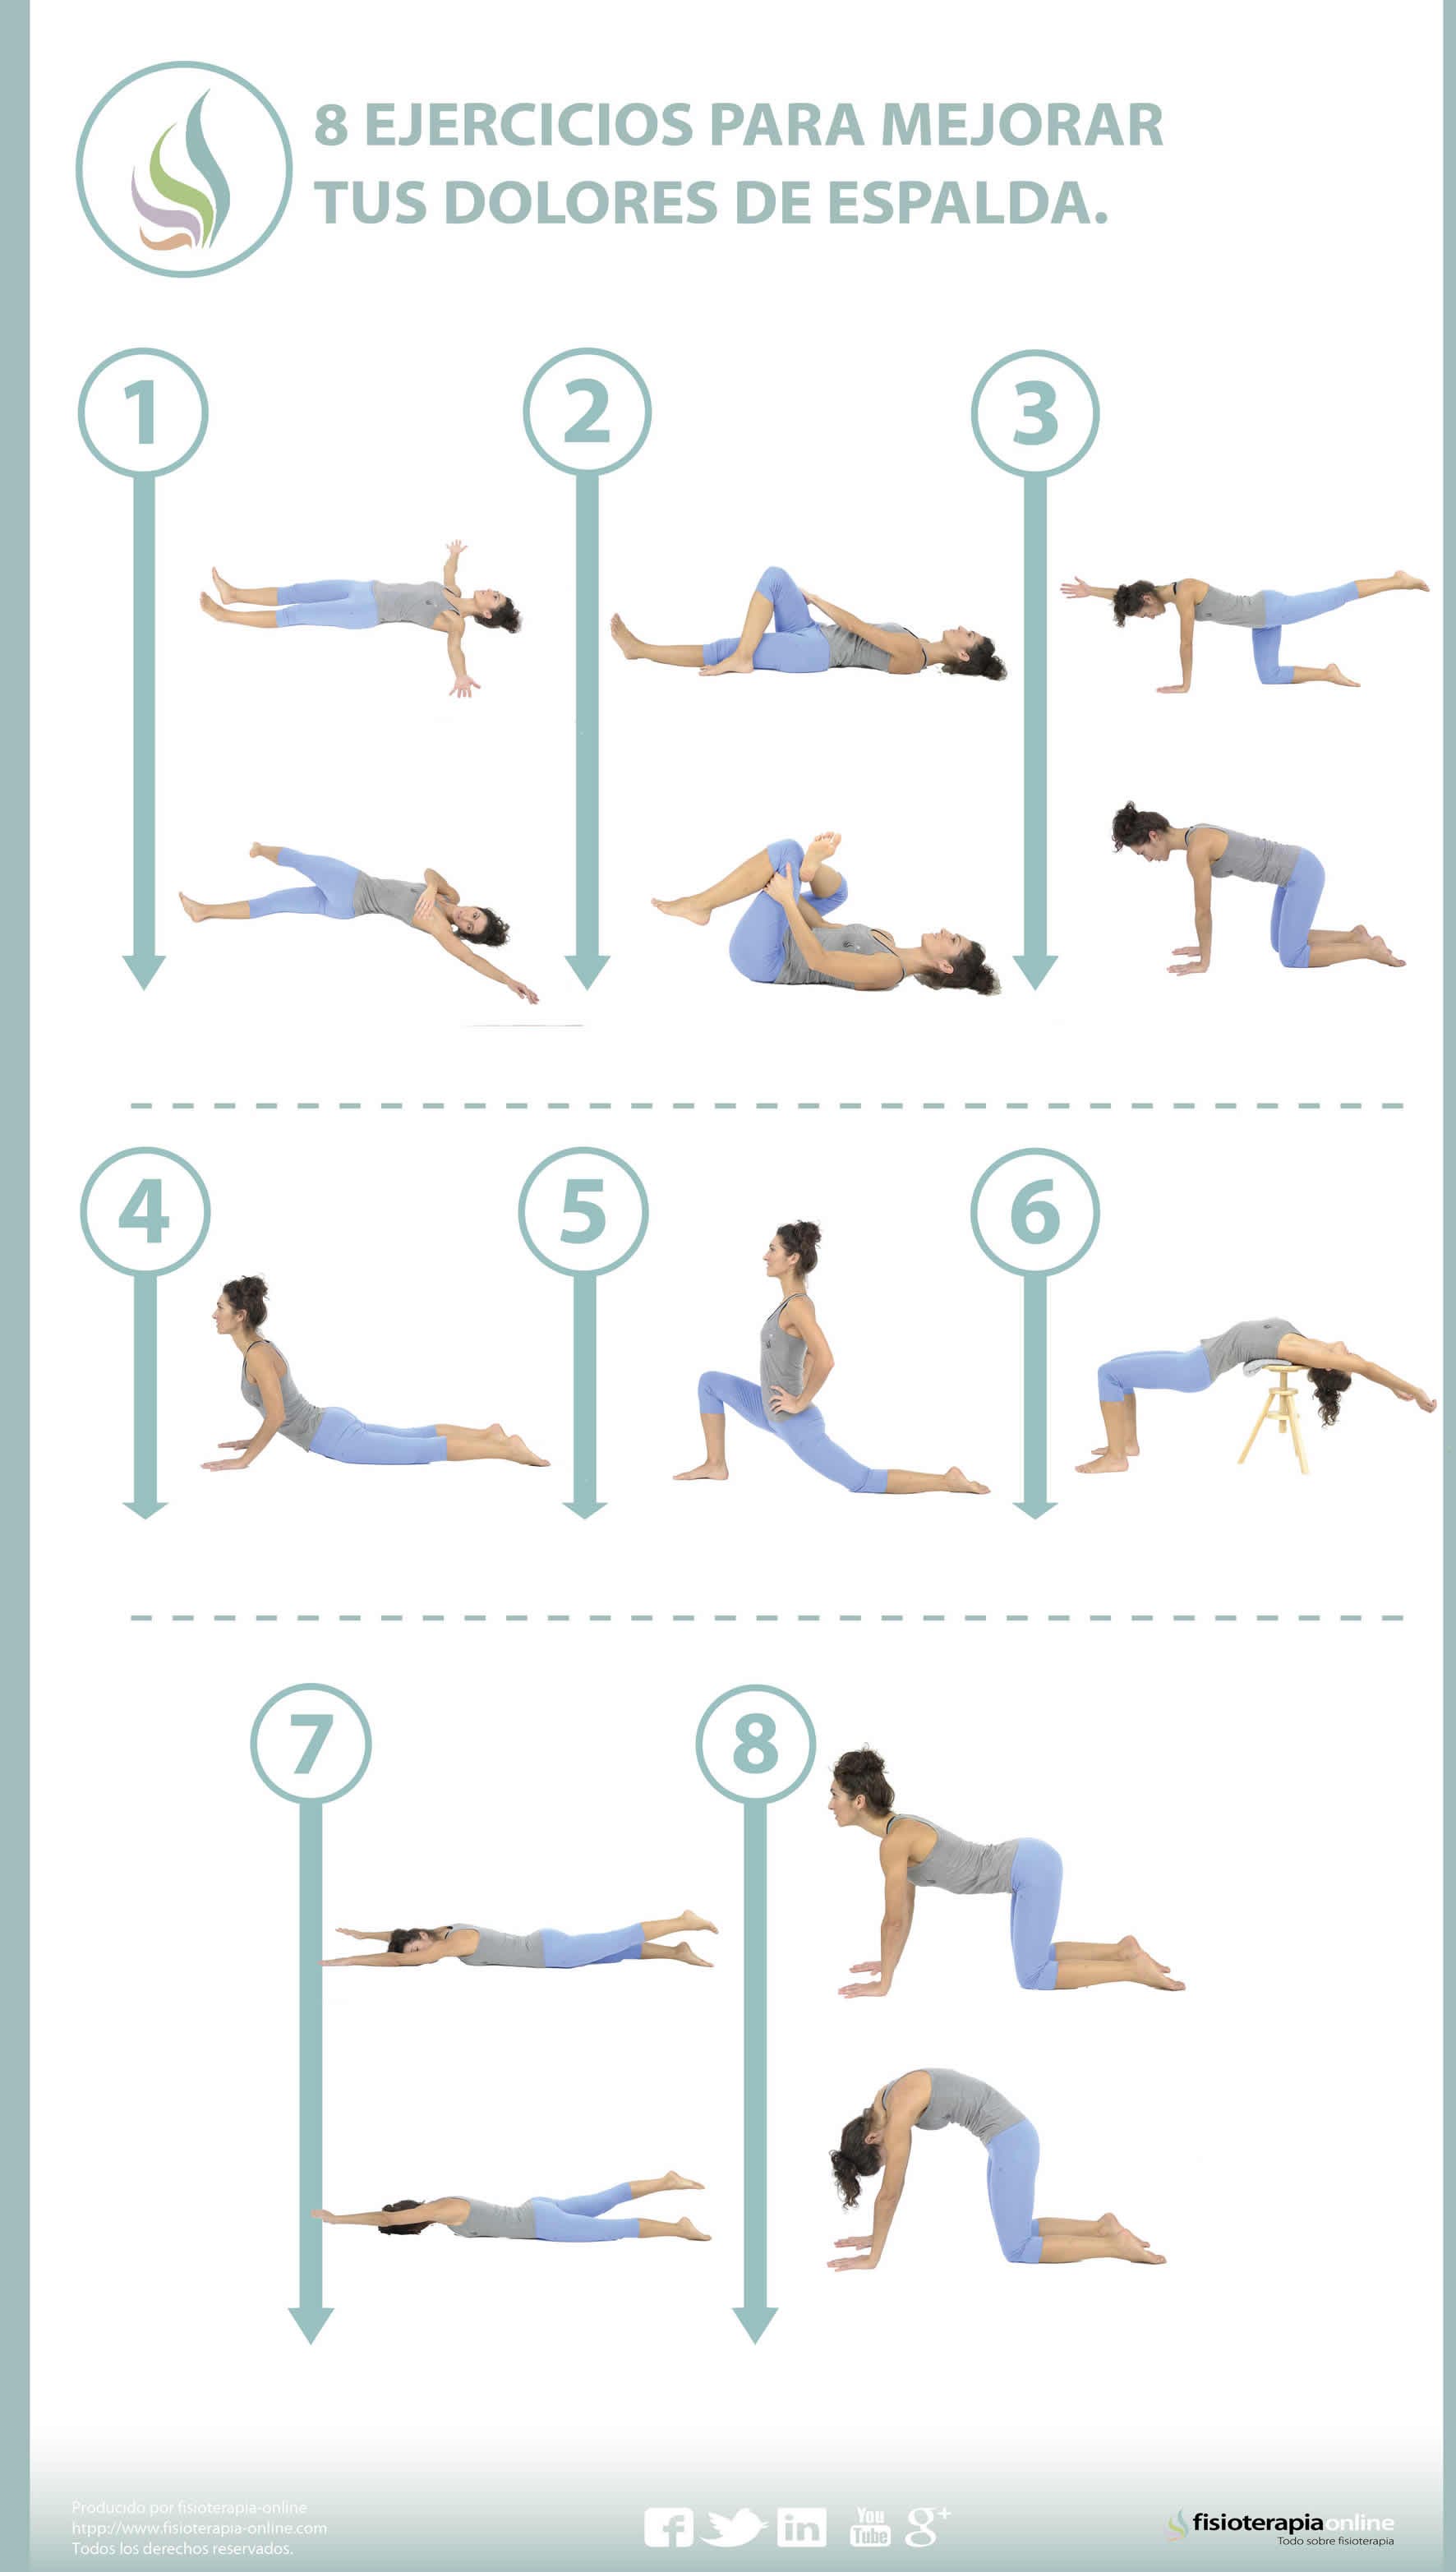 Los 8 ejercicios que te van a curar el dolor de espalda (según la clínica Mayo)